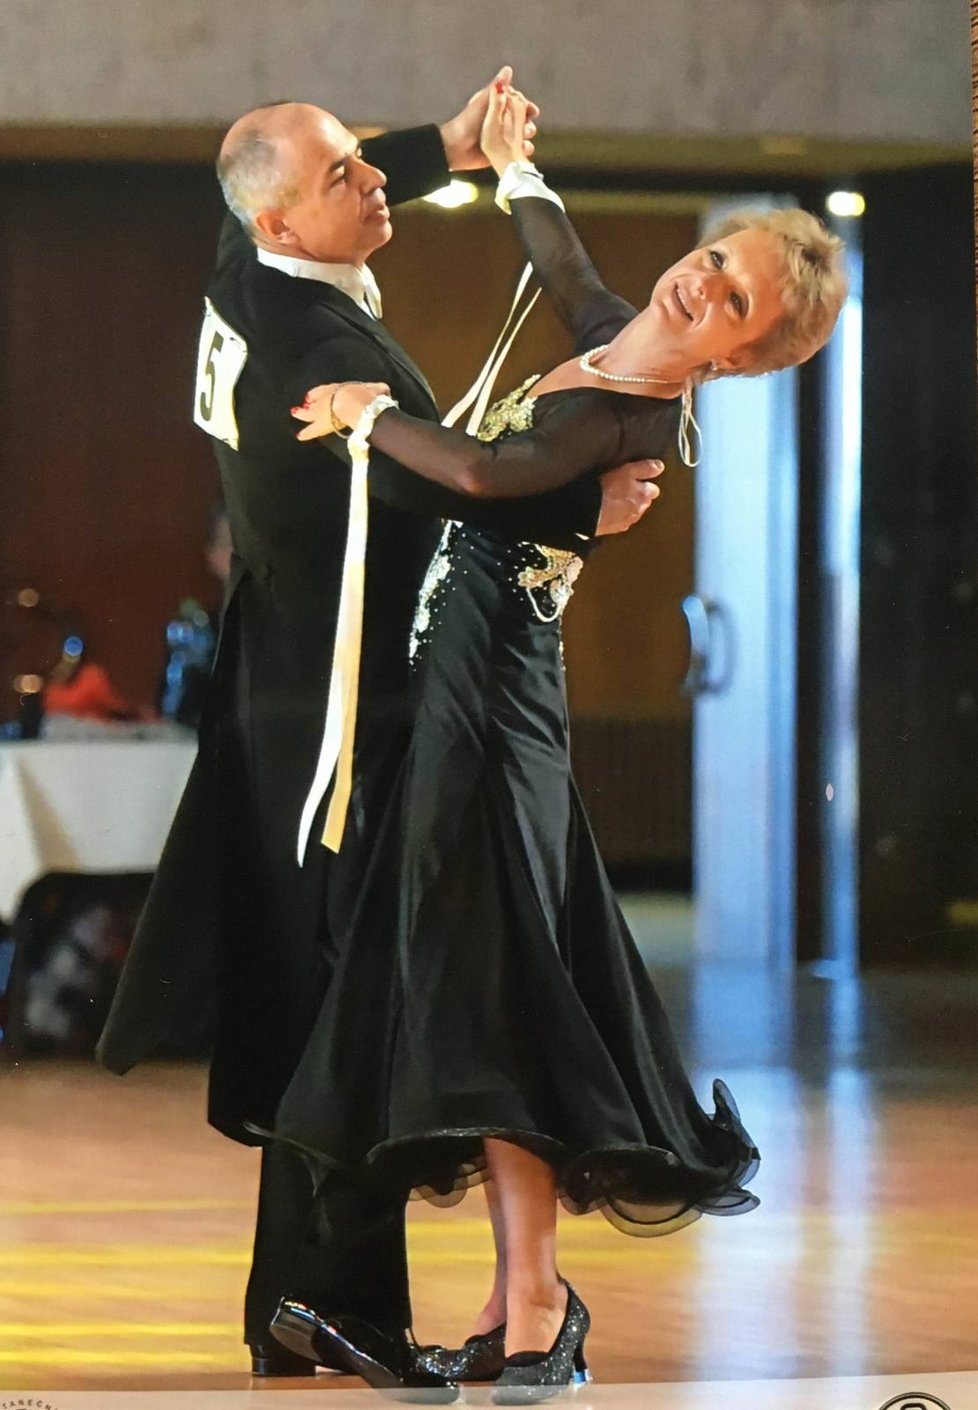 Manželé Benýškovi na soutěži ve víru tance. Nejoblíbenějším tancem paní Lenky je tango, její manžel nedá dopustit na slowfox.